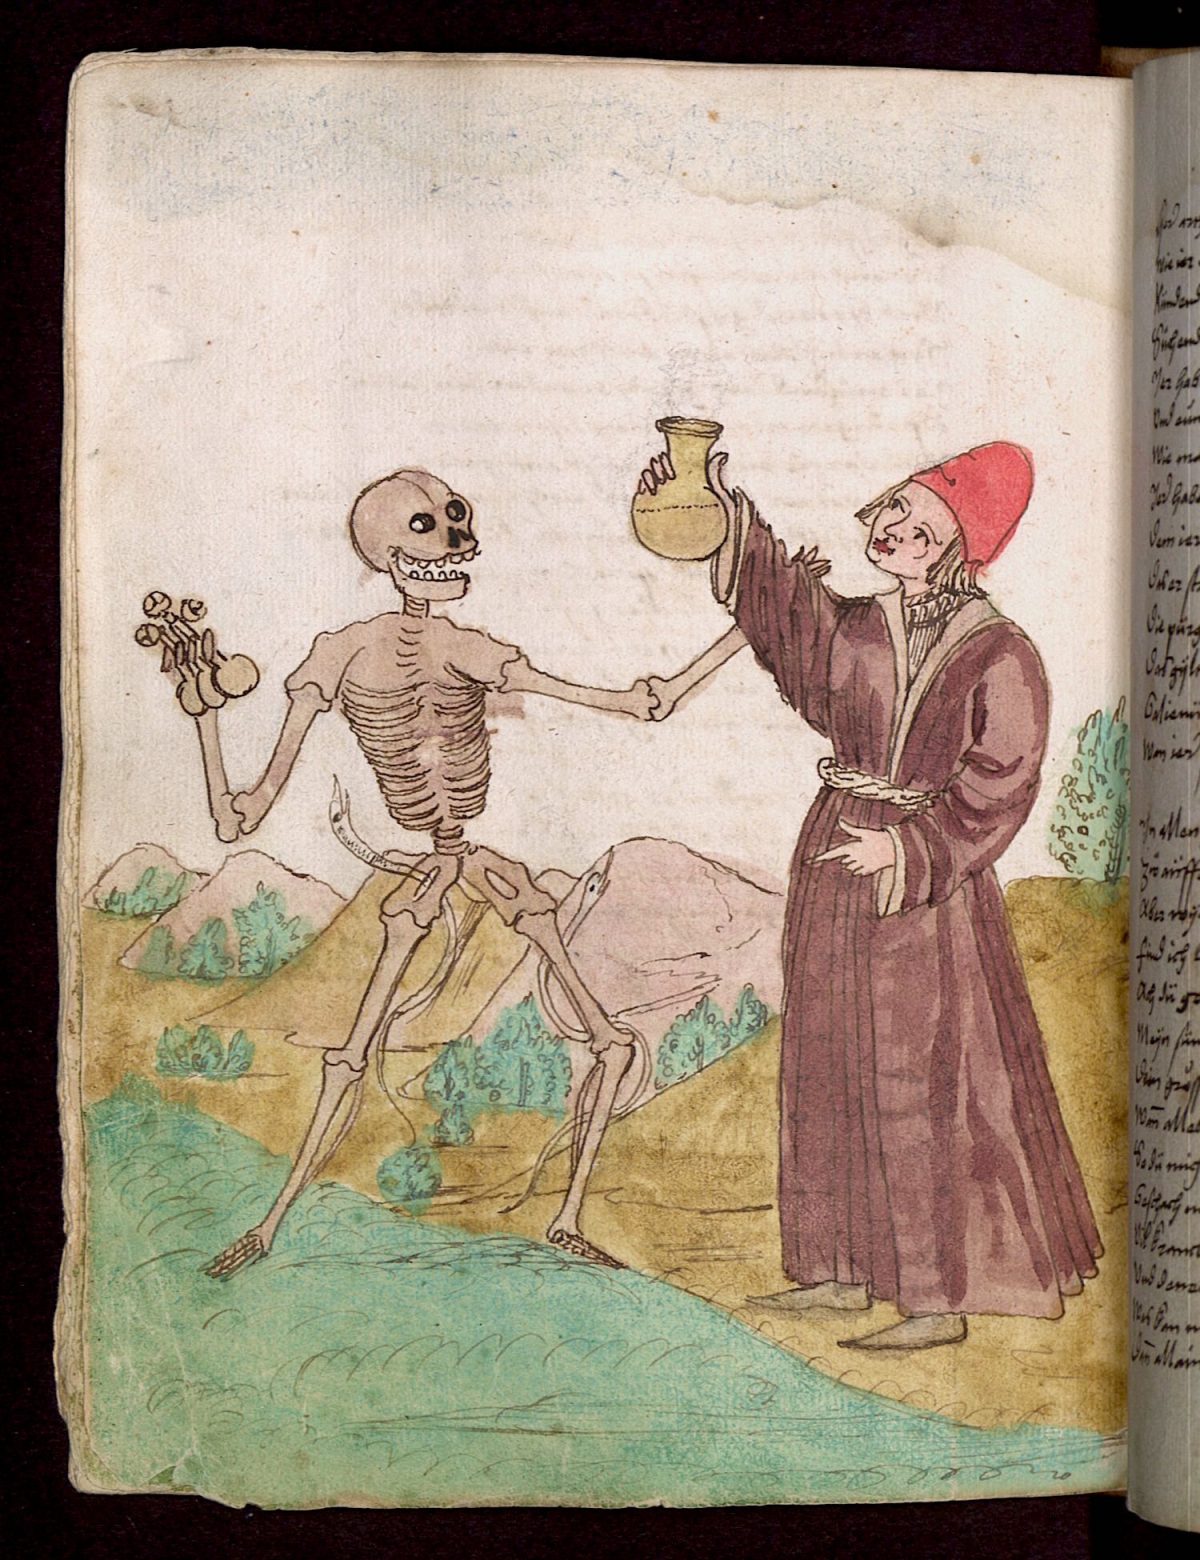 Wilhelm Werner von Zimmer, Dance of Death, illustration, 1540